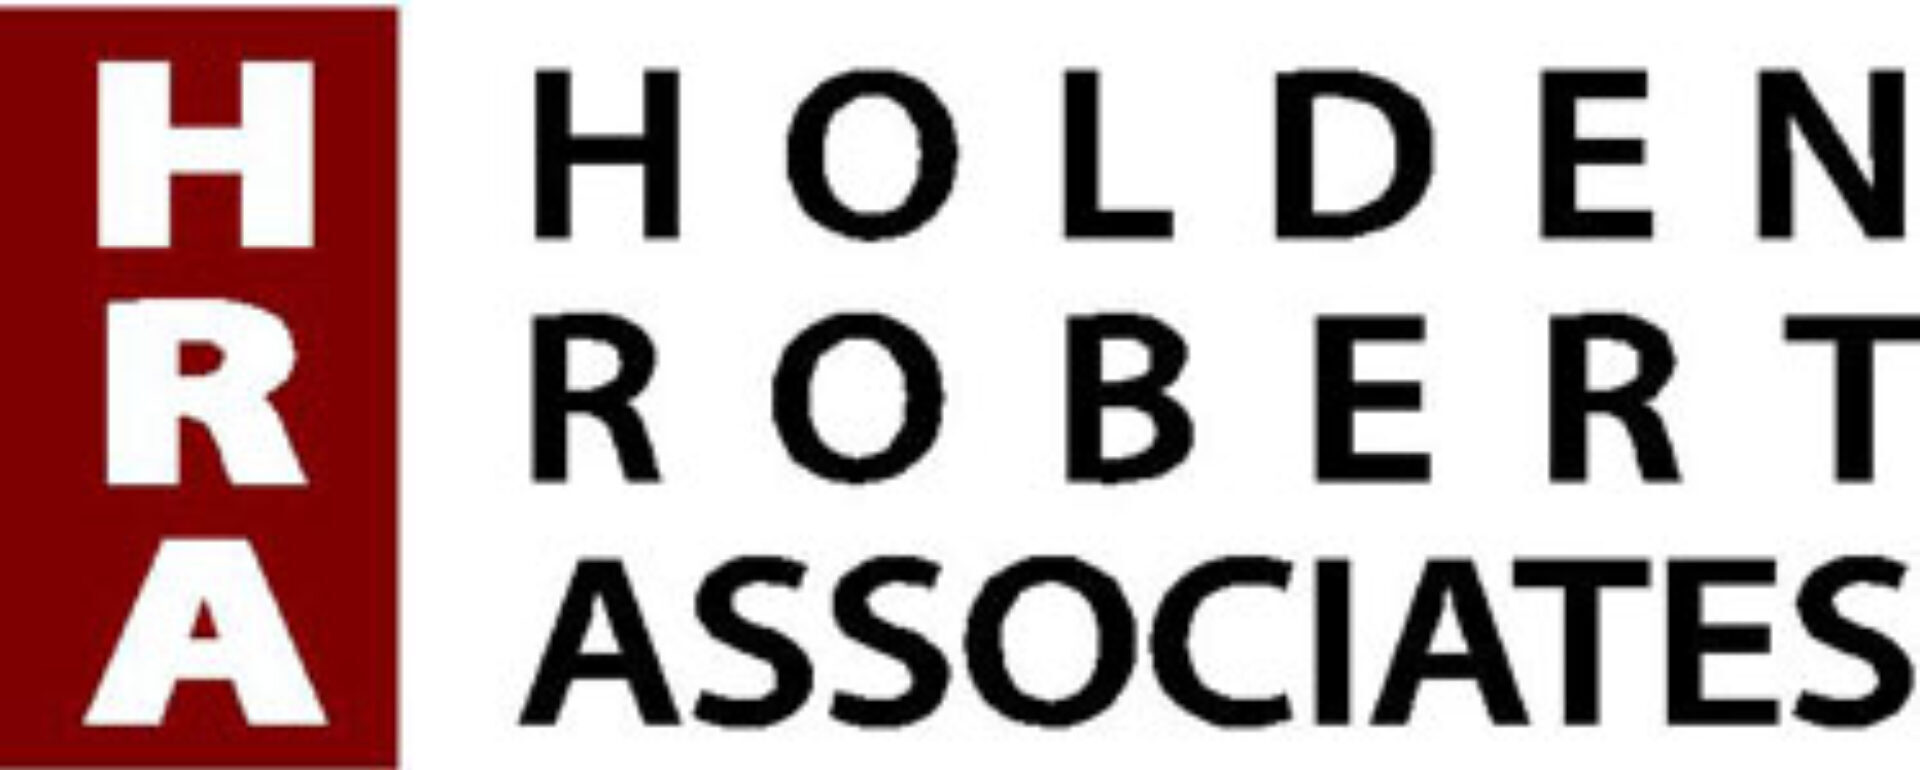 Holden Robert Associates